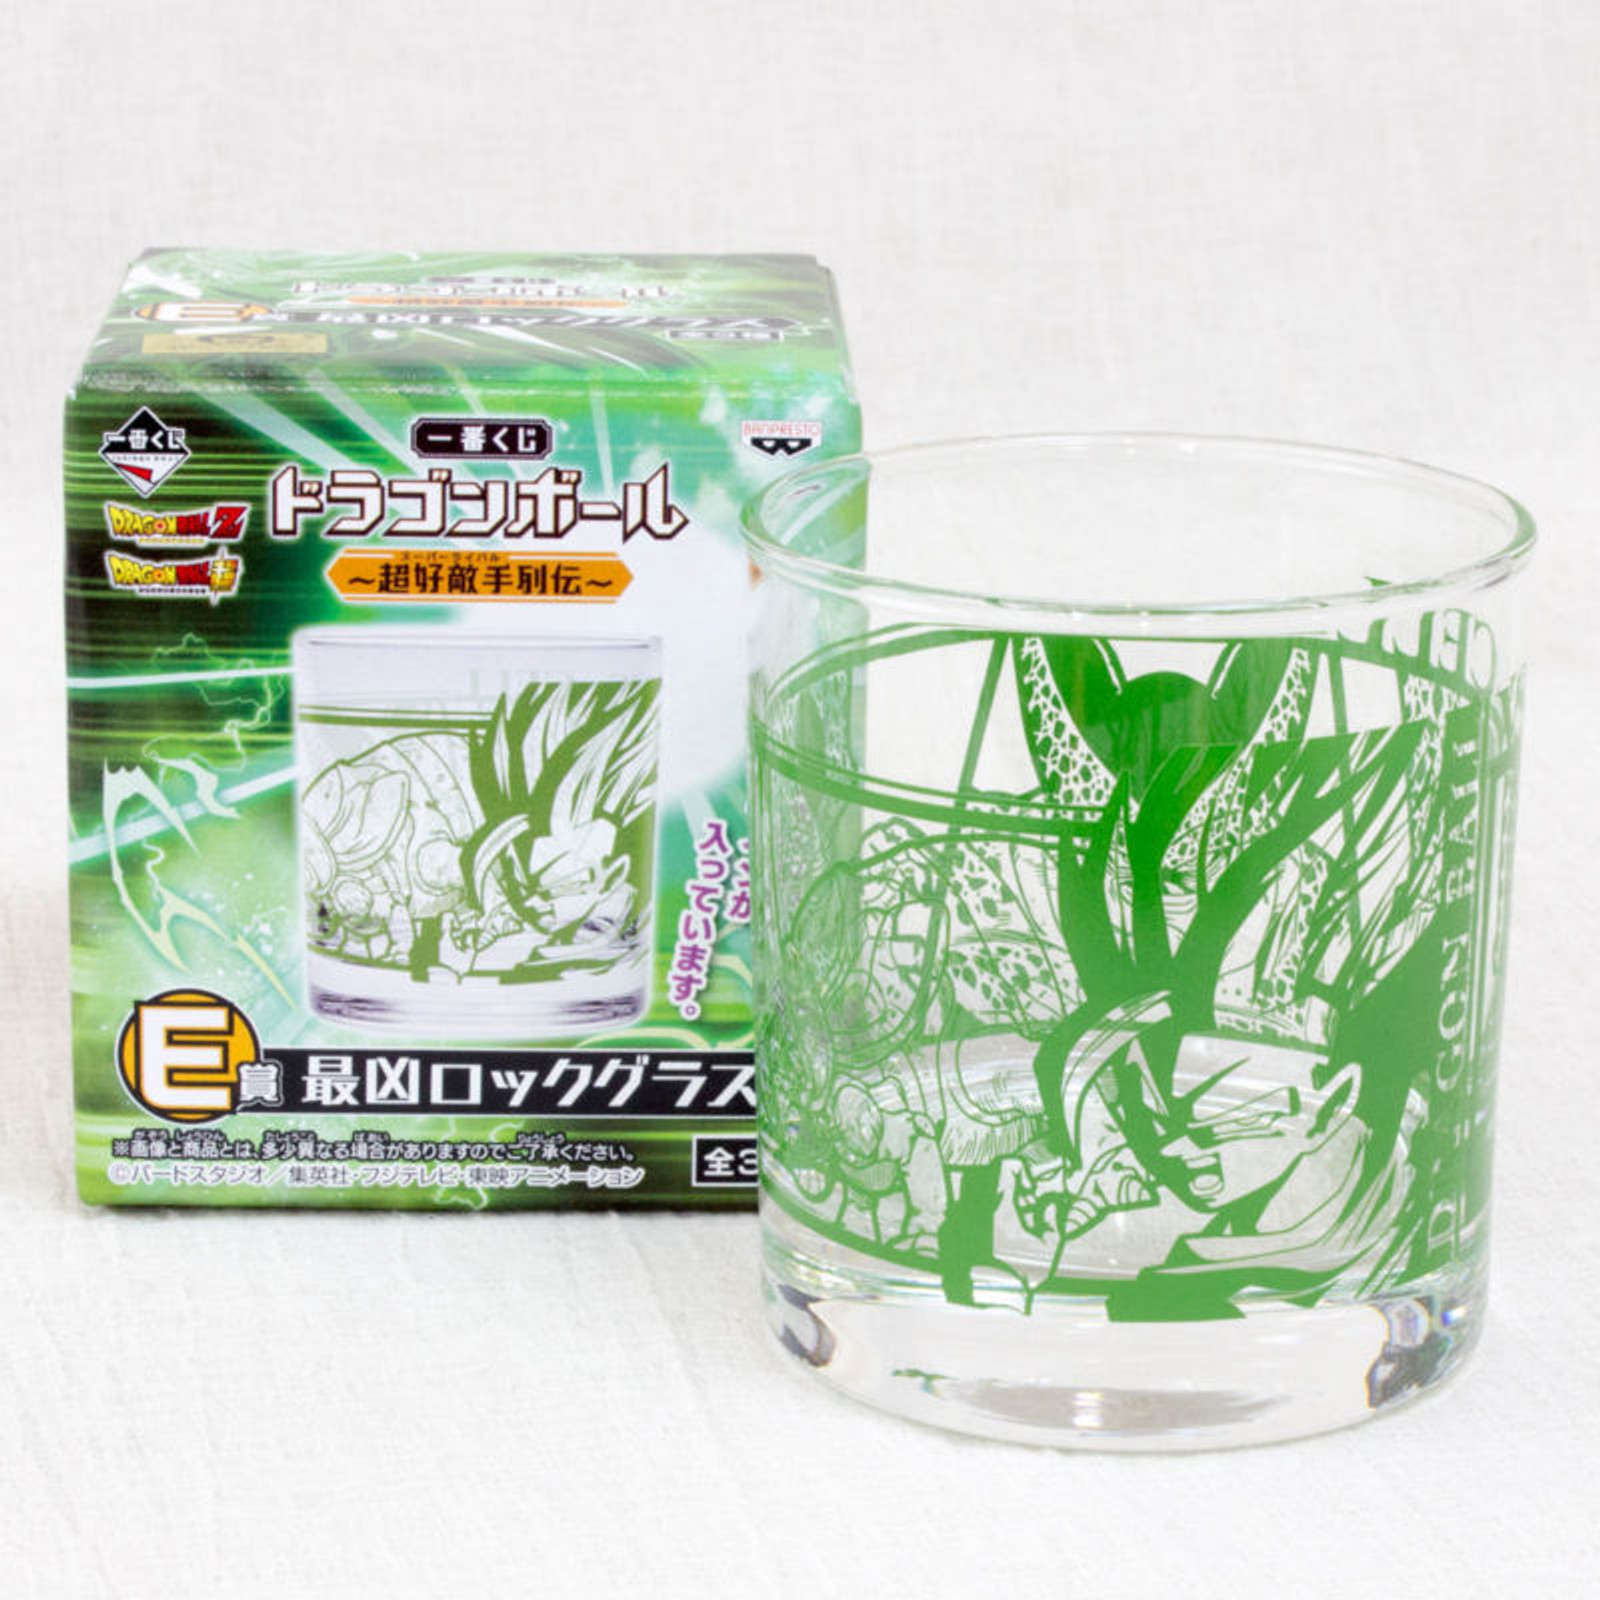 Dragon Ball Z Saikyo Rock Glass Super Rival vs. Cell Banpresto JAPAN ANIME